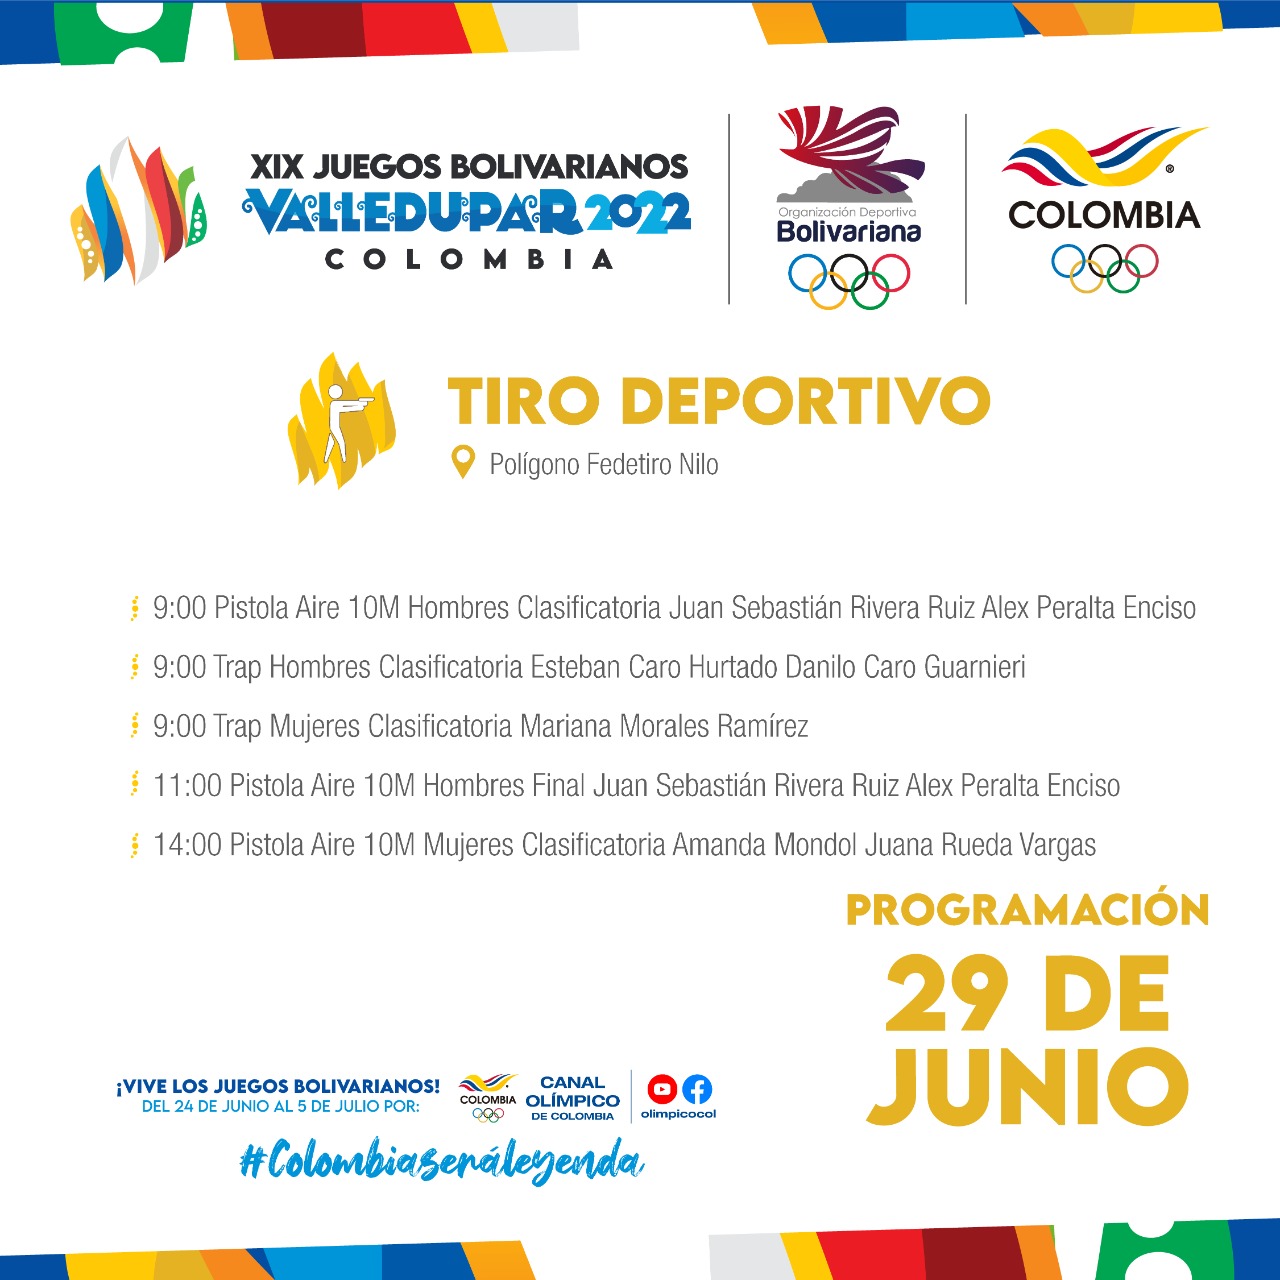 Juegos Bolivarianos - 29 de junio